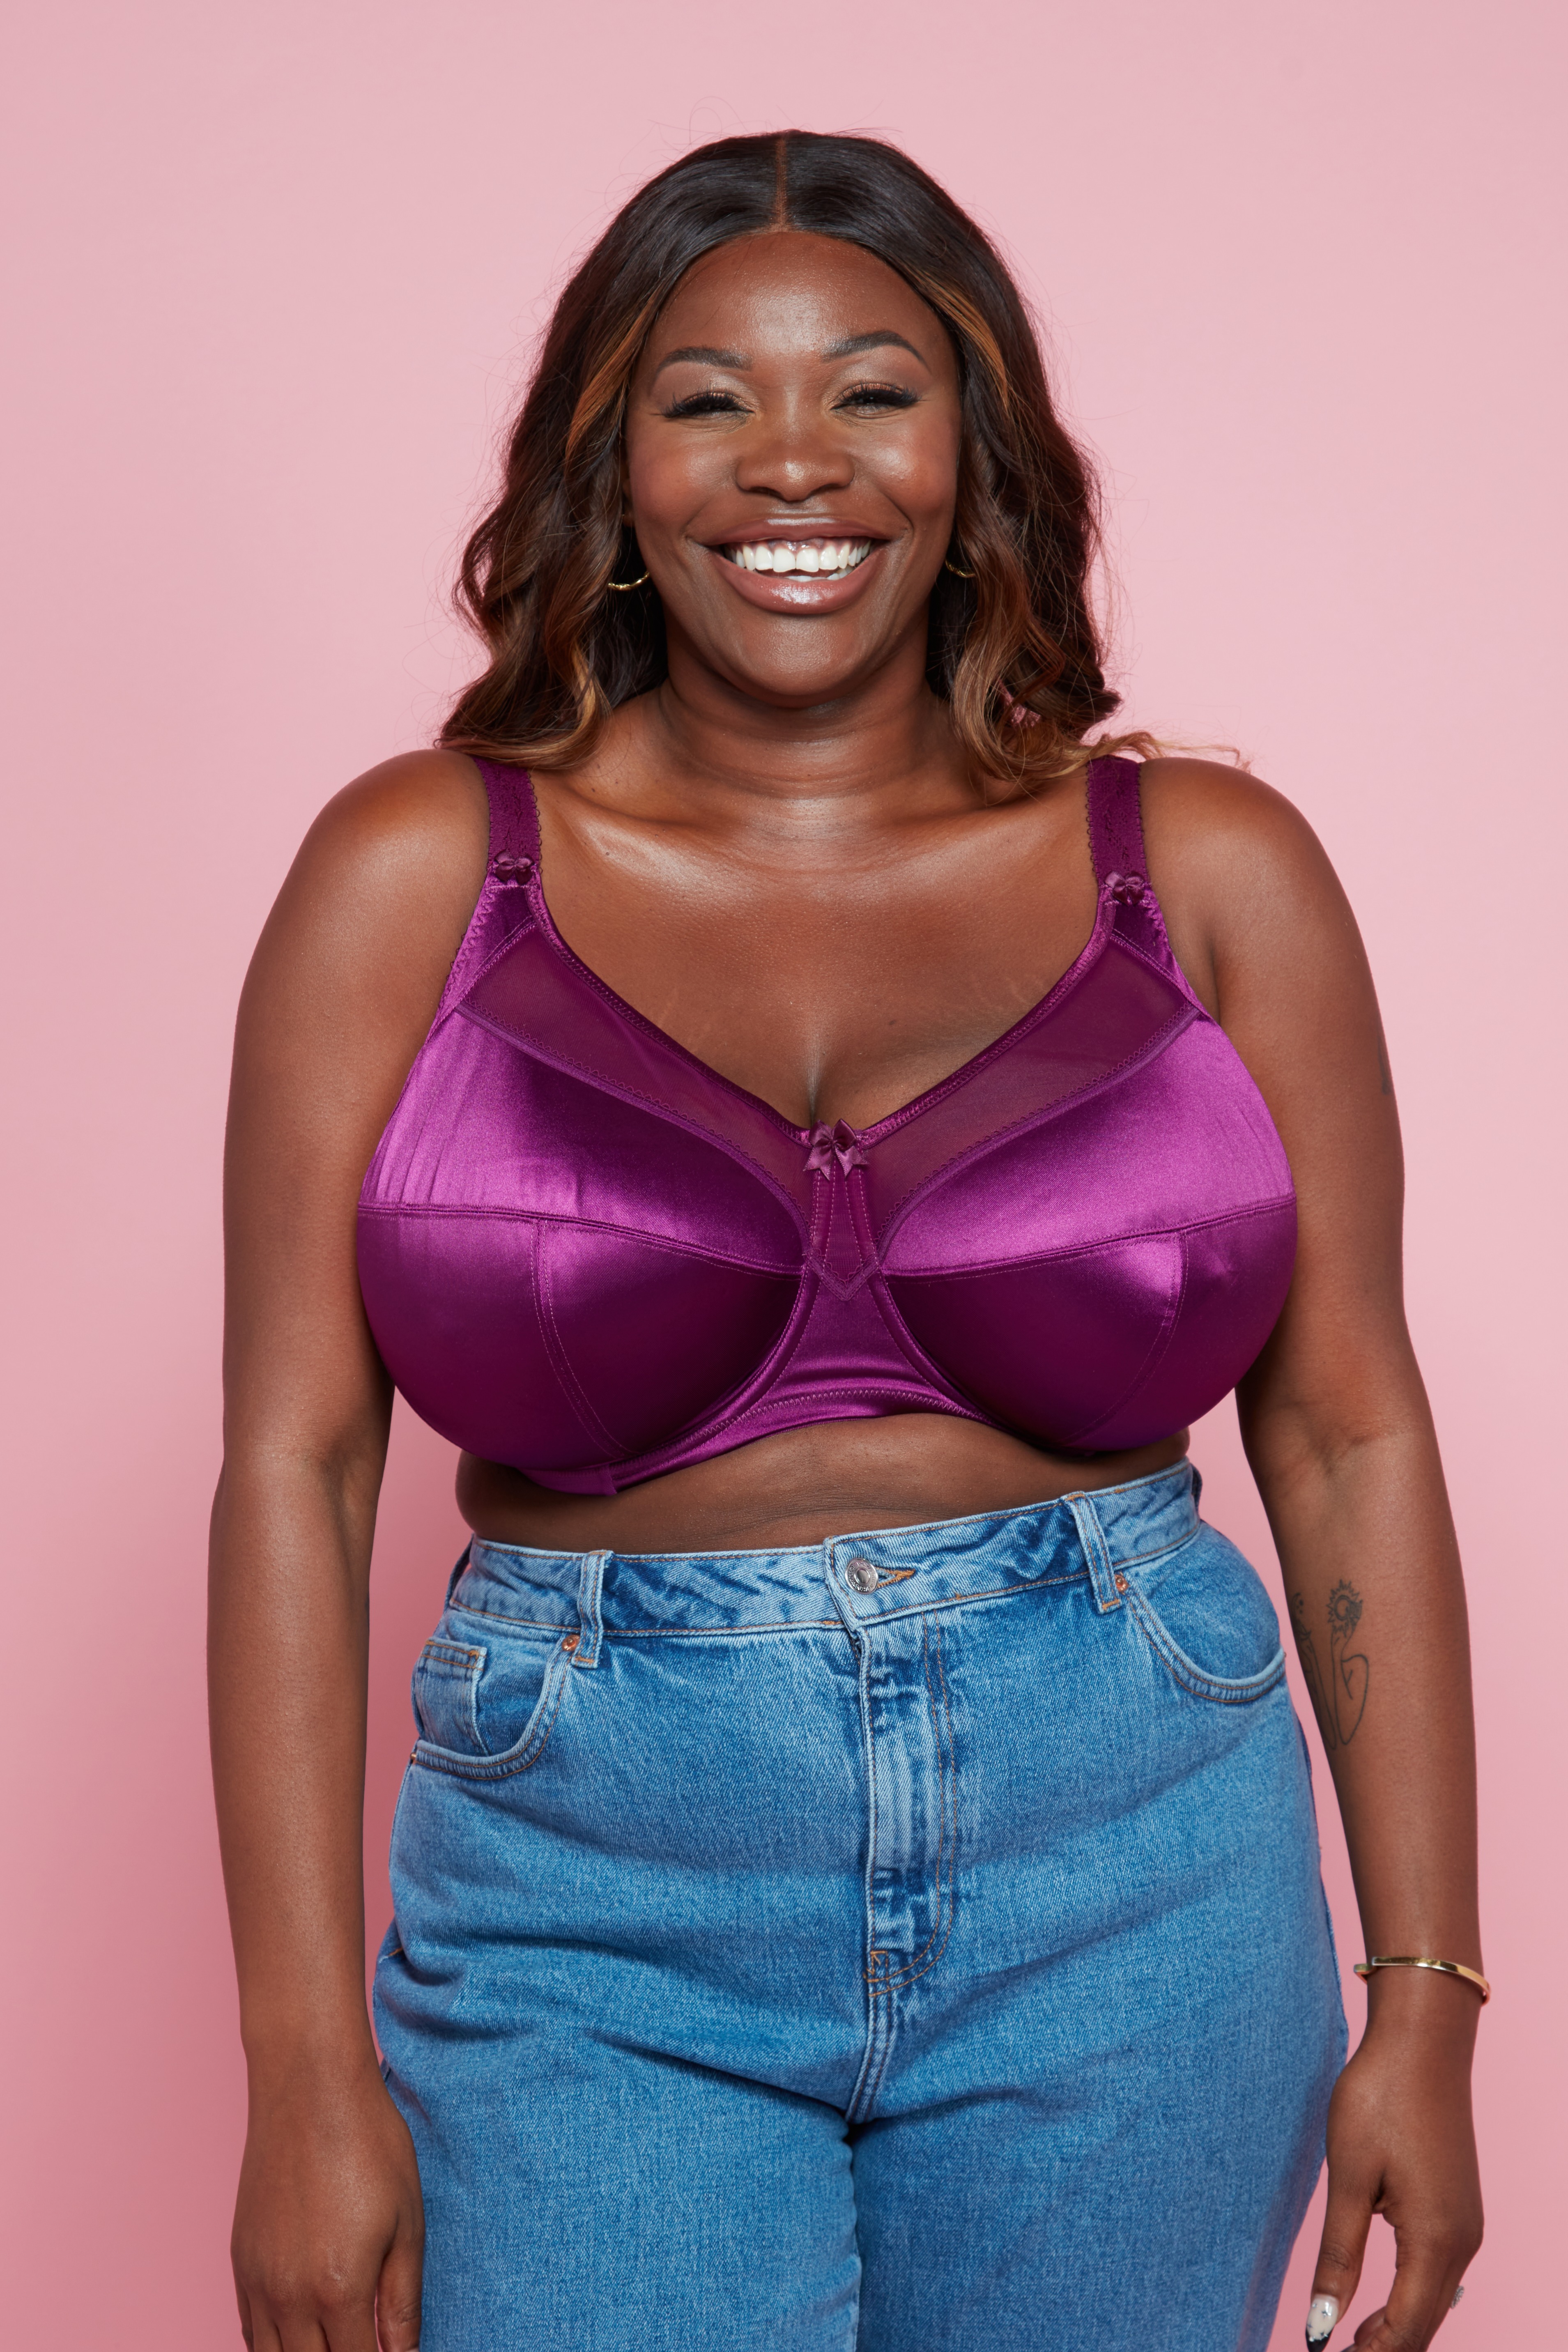 clarissa xu recommends big big big boobs pic